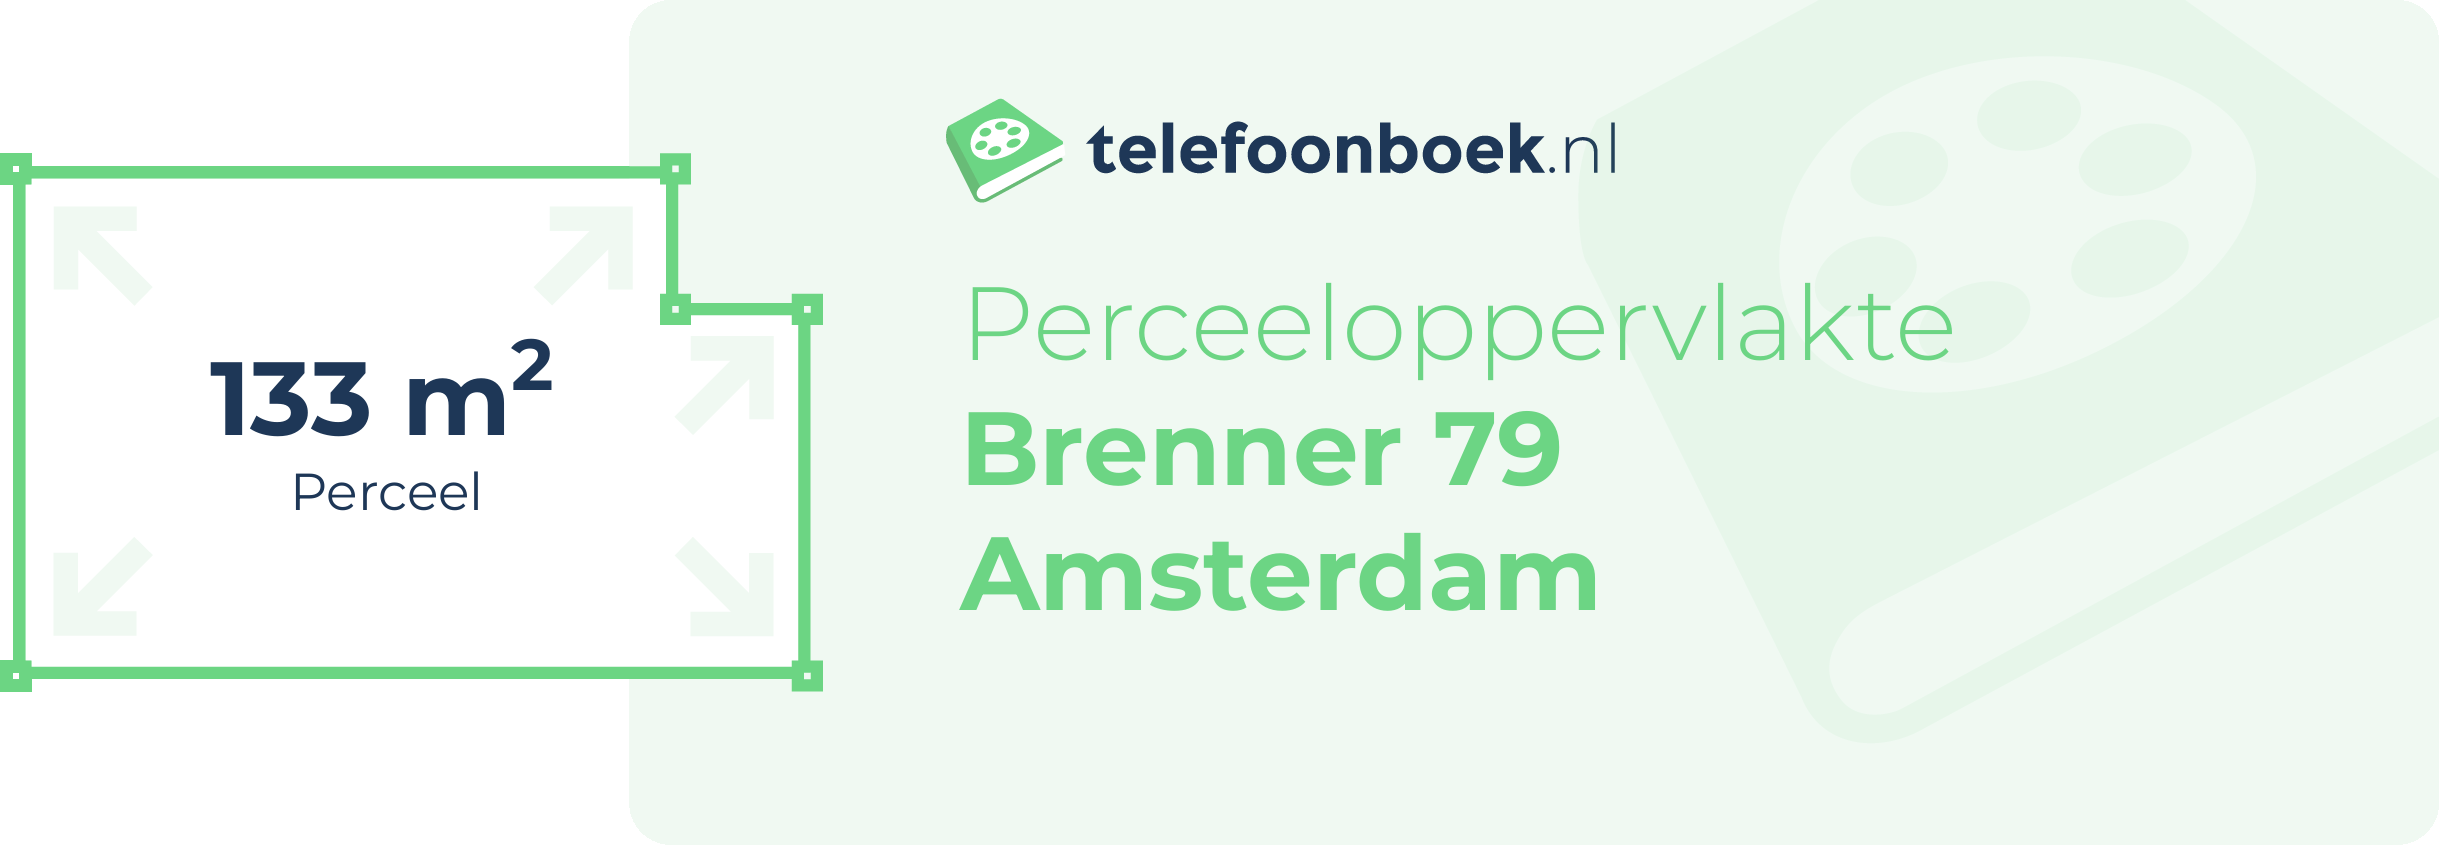 Perceeloppervlakte Brenner 79 Amsterdam